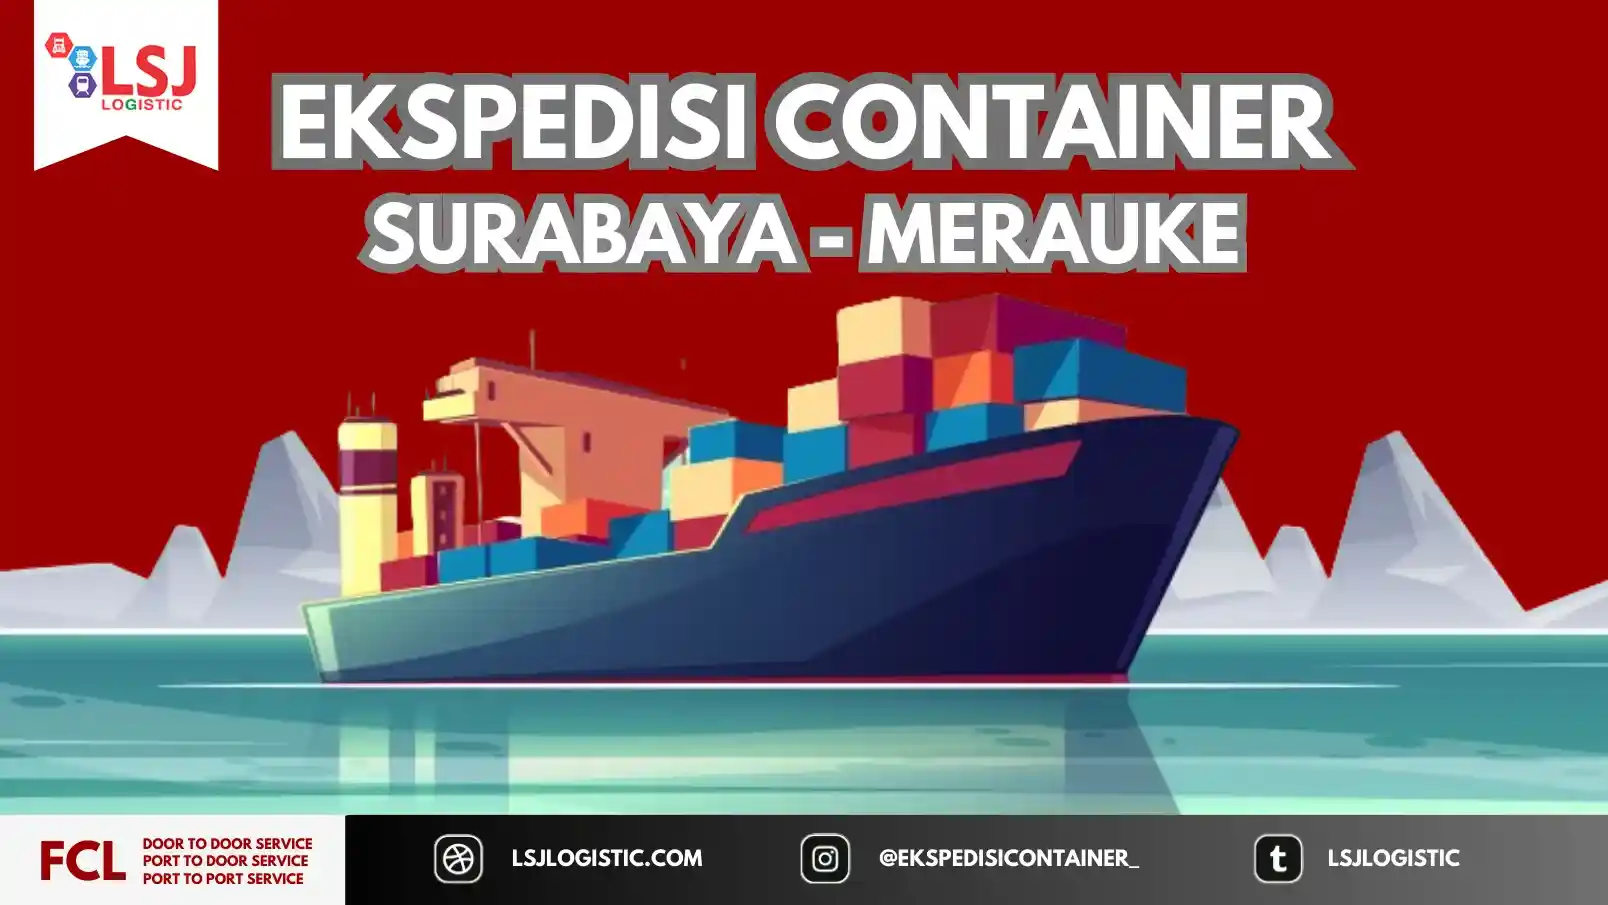 Harga Pengiriman Container Surabaya Merauke